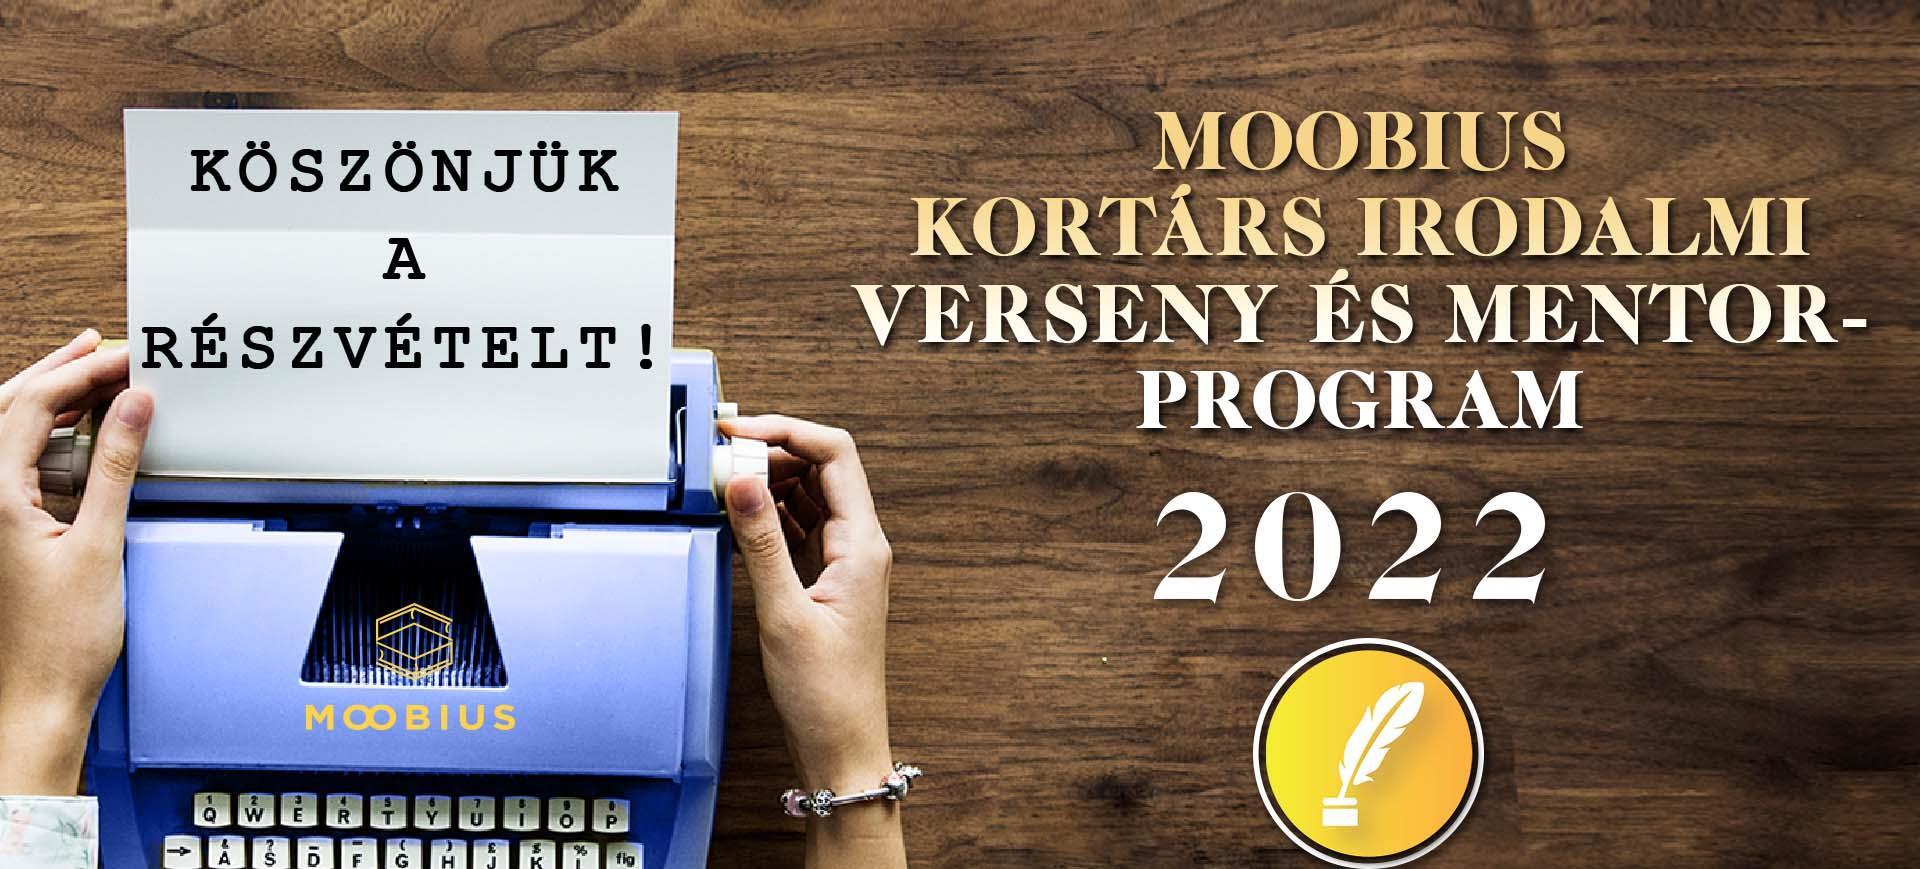 Moobius Kortárs Irodalmi Verseny és Mentorprogram 2022